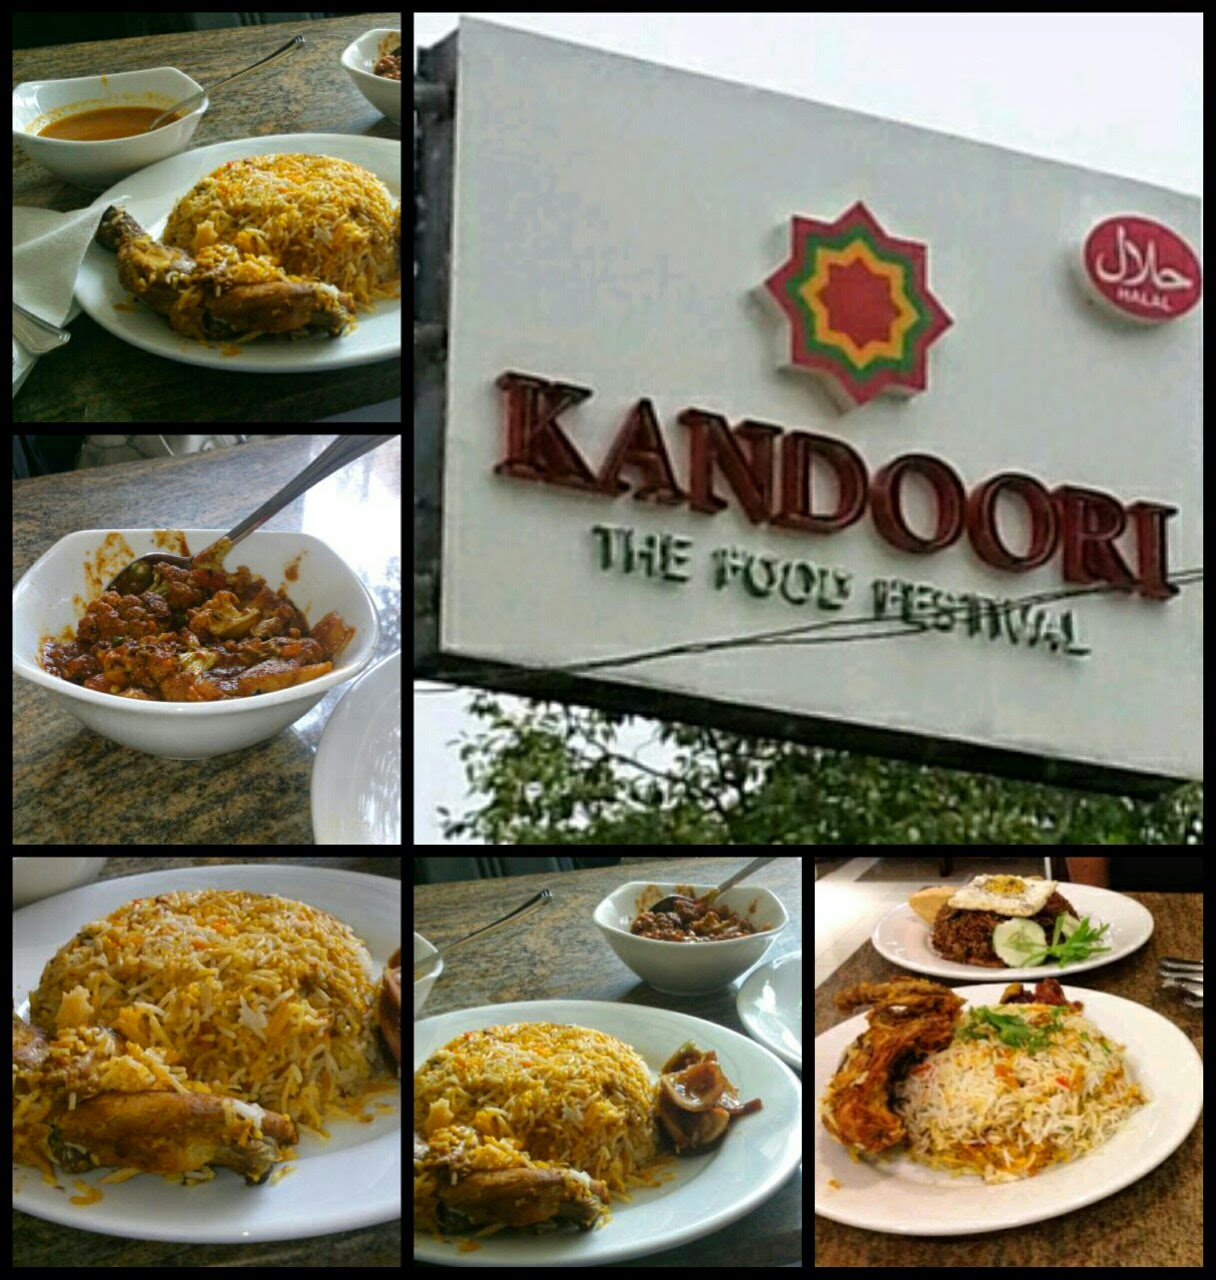 Kandoori